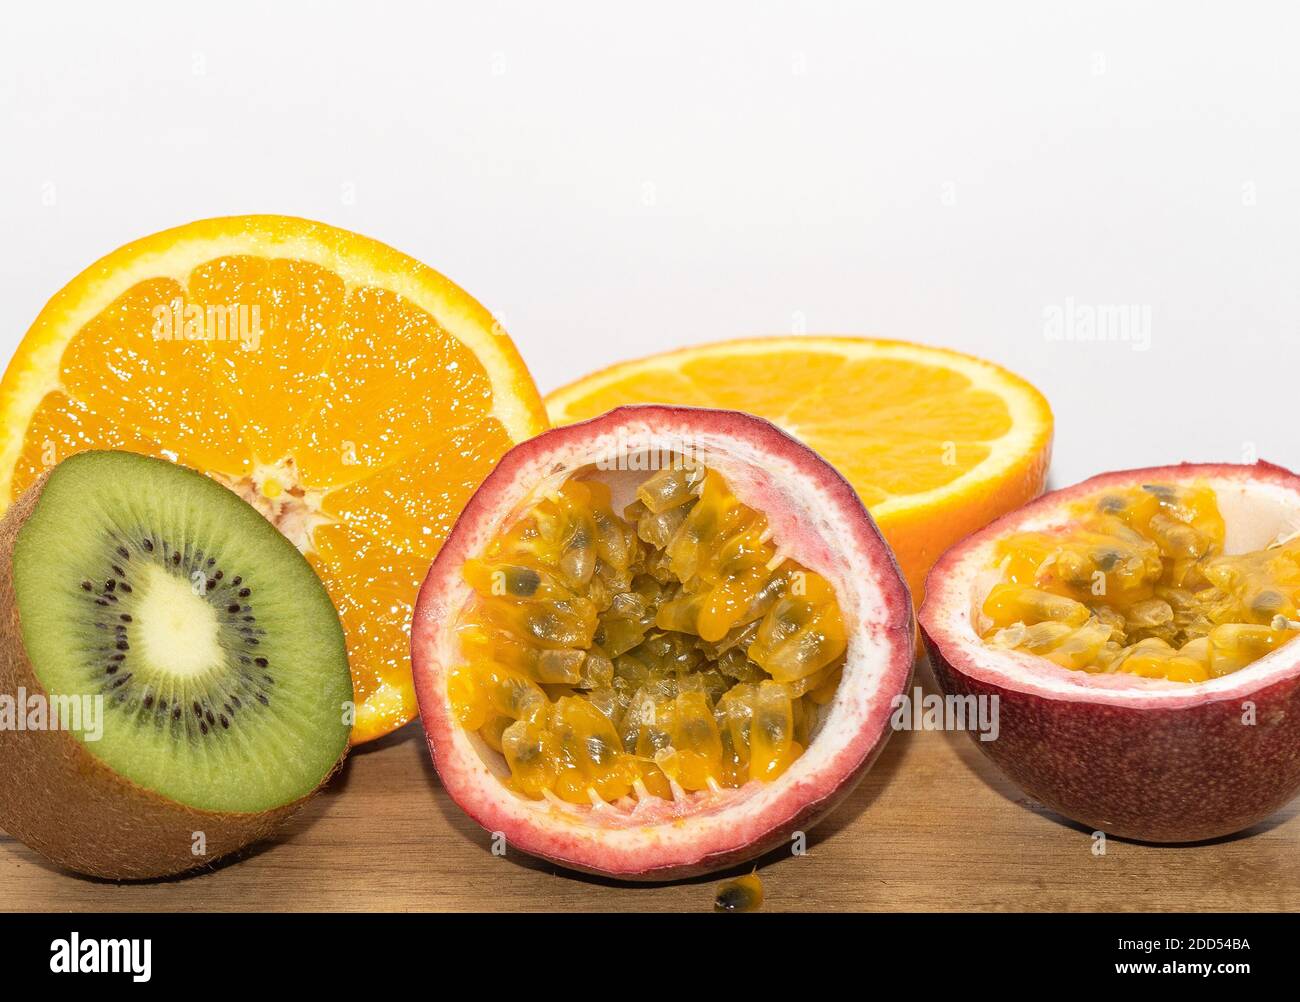 Mixed Fruits On The Wooden Background. Kiwi. Orange. Passion Fruits. Stock Photo